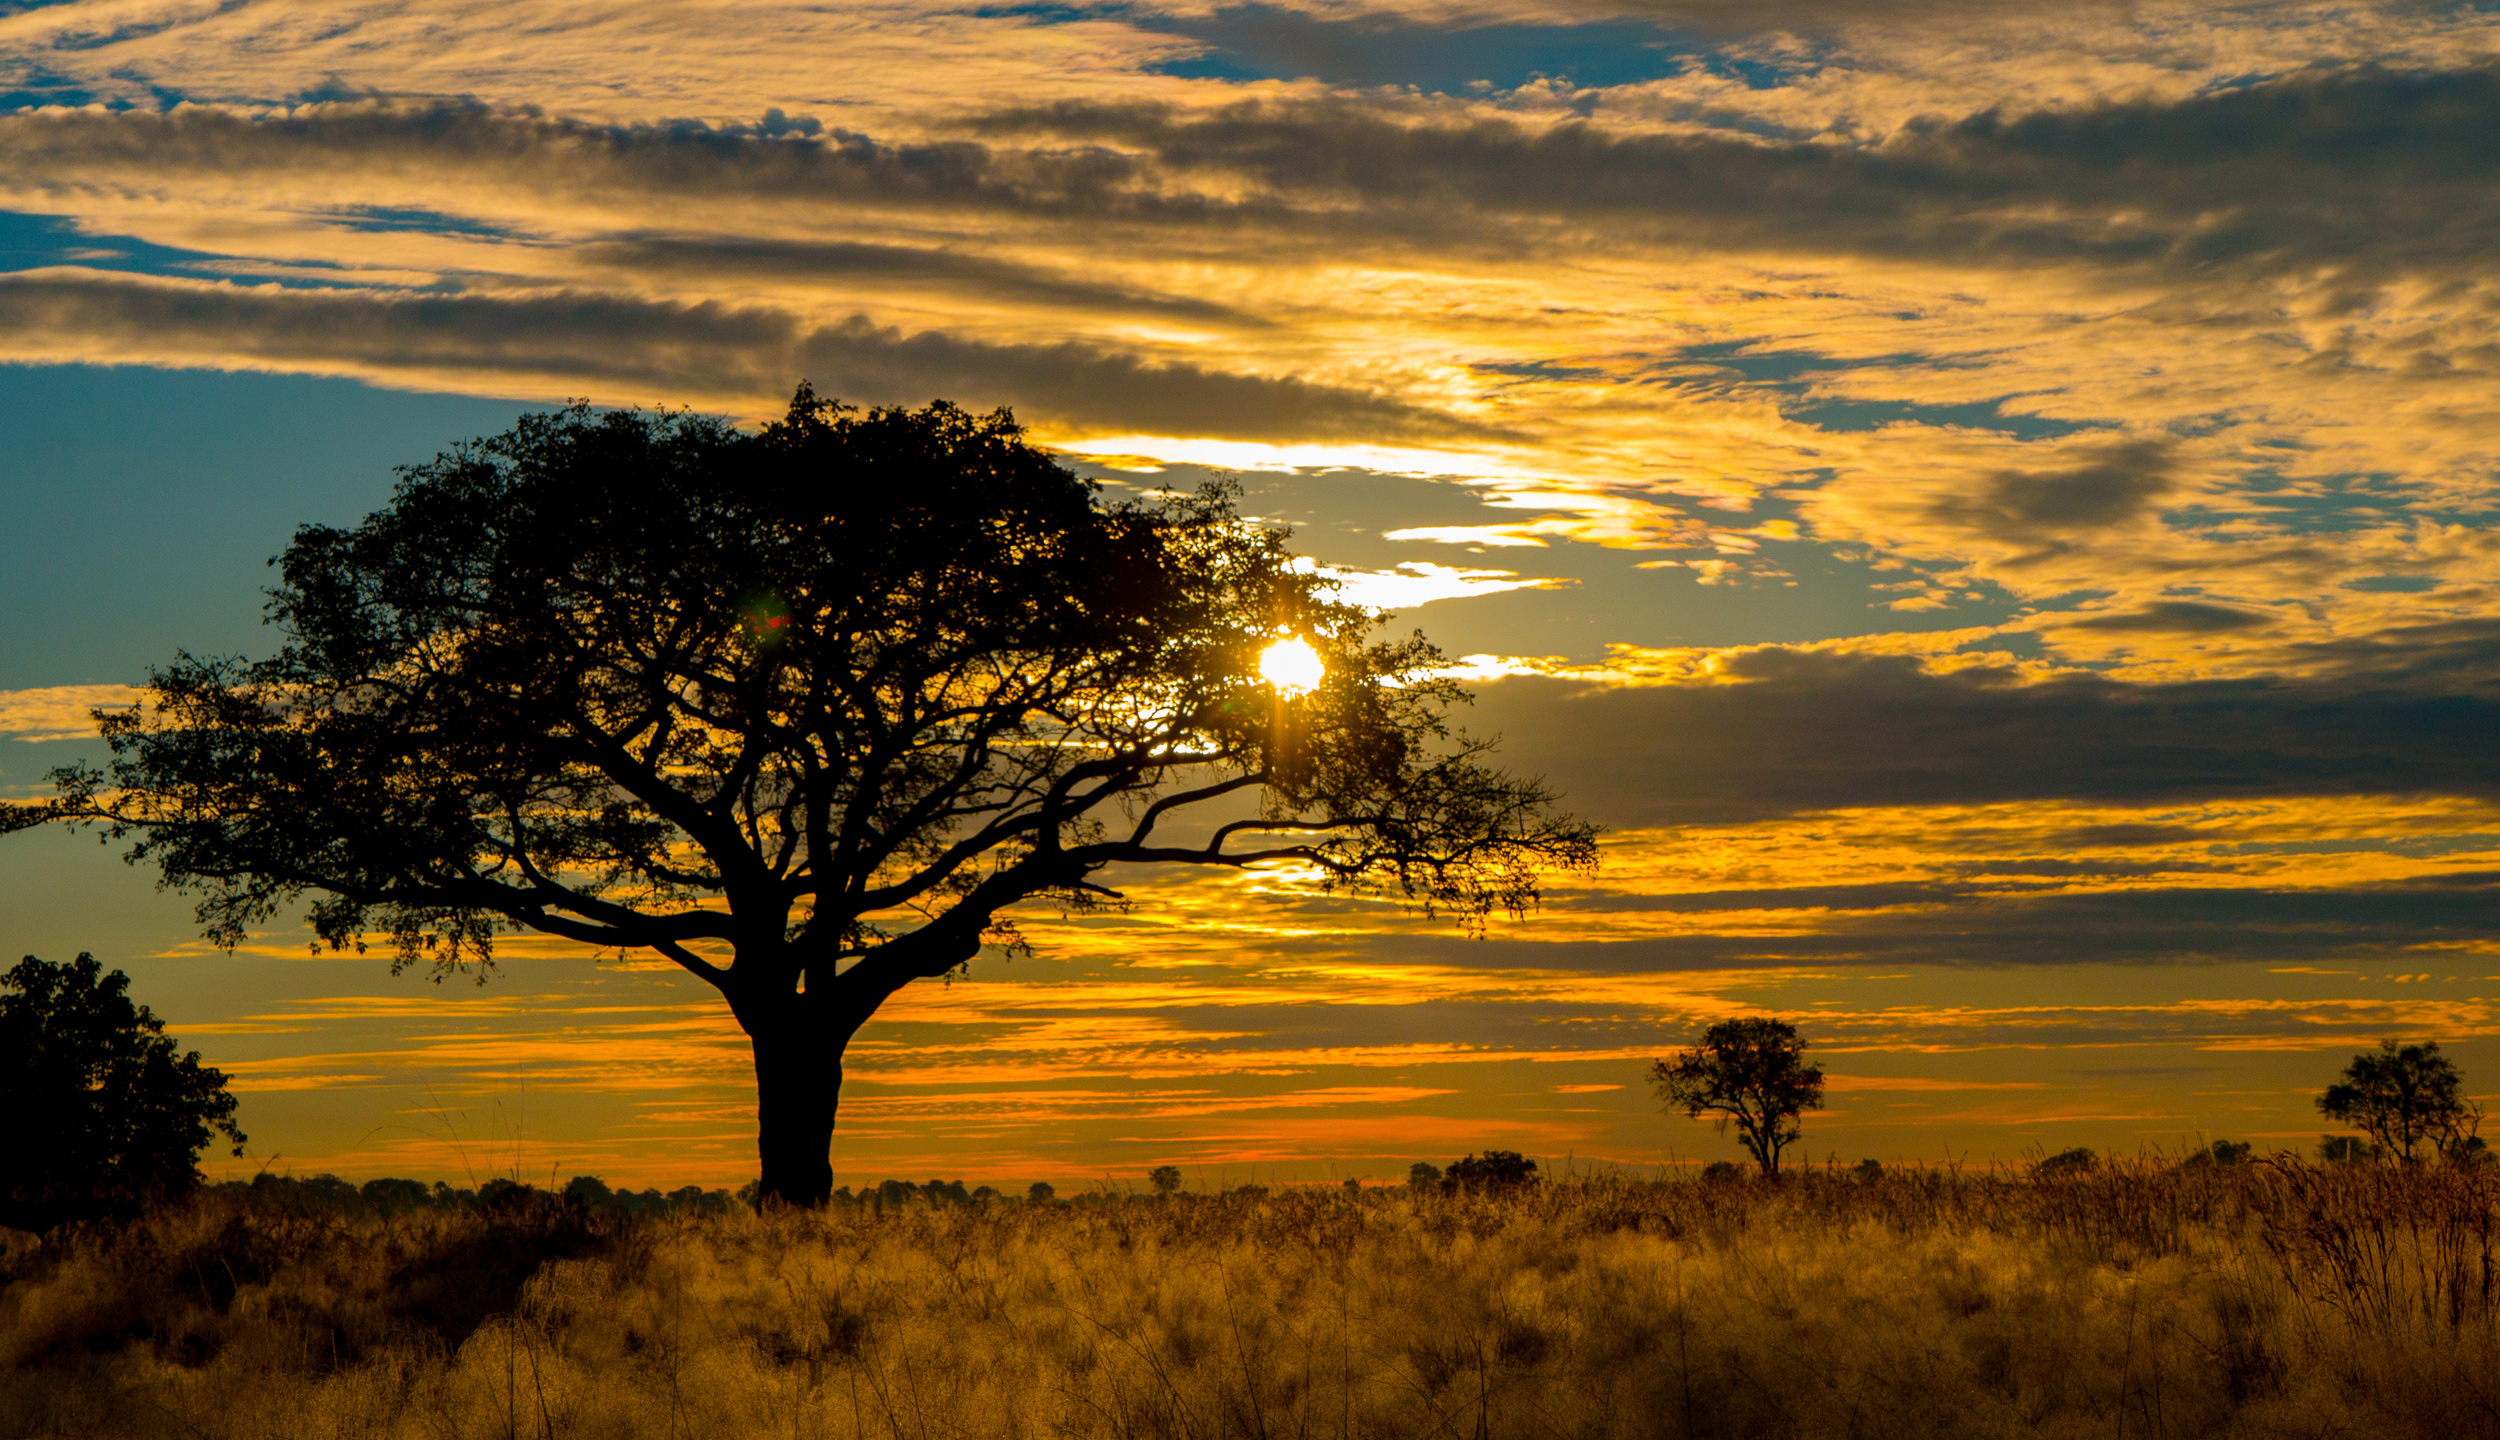 Botswana Safari Package